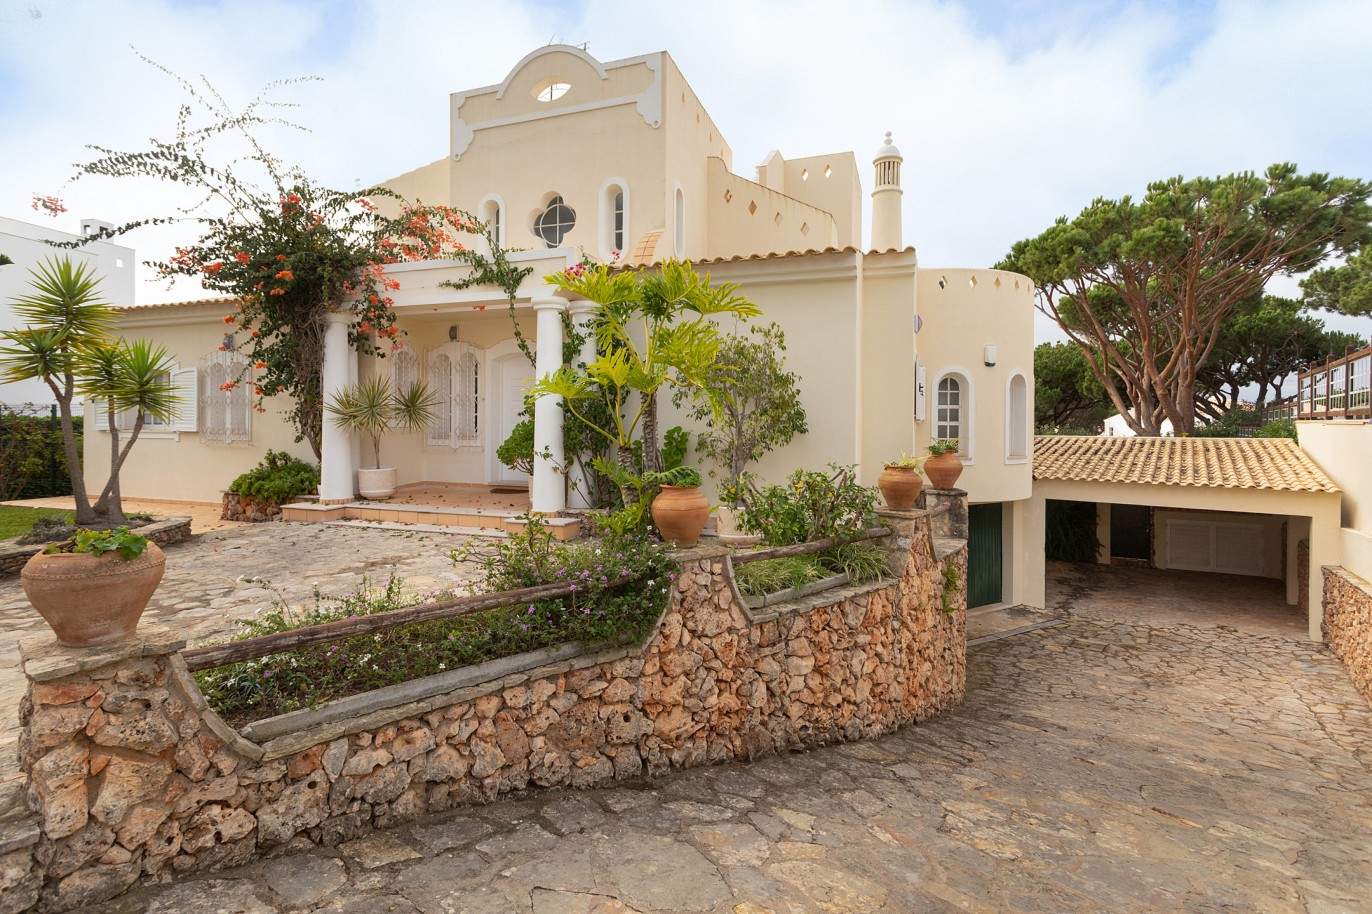 5 Bedroom Villa with pool for sale in Vilamoura, Algarve_212568